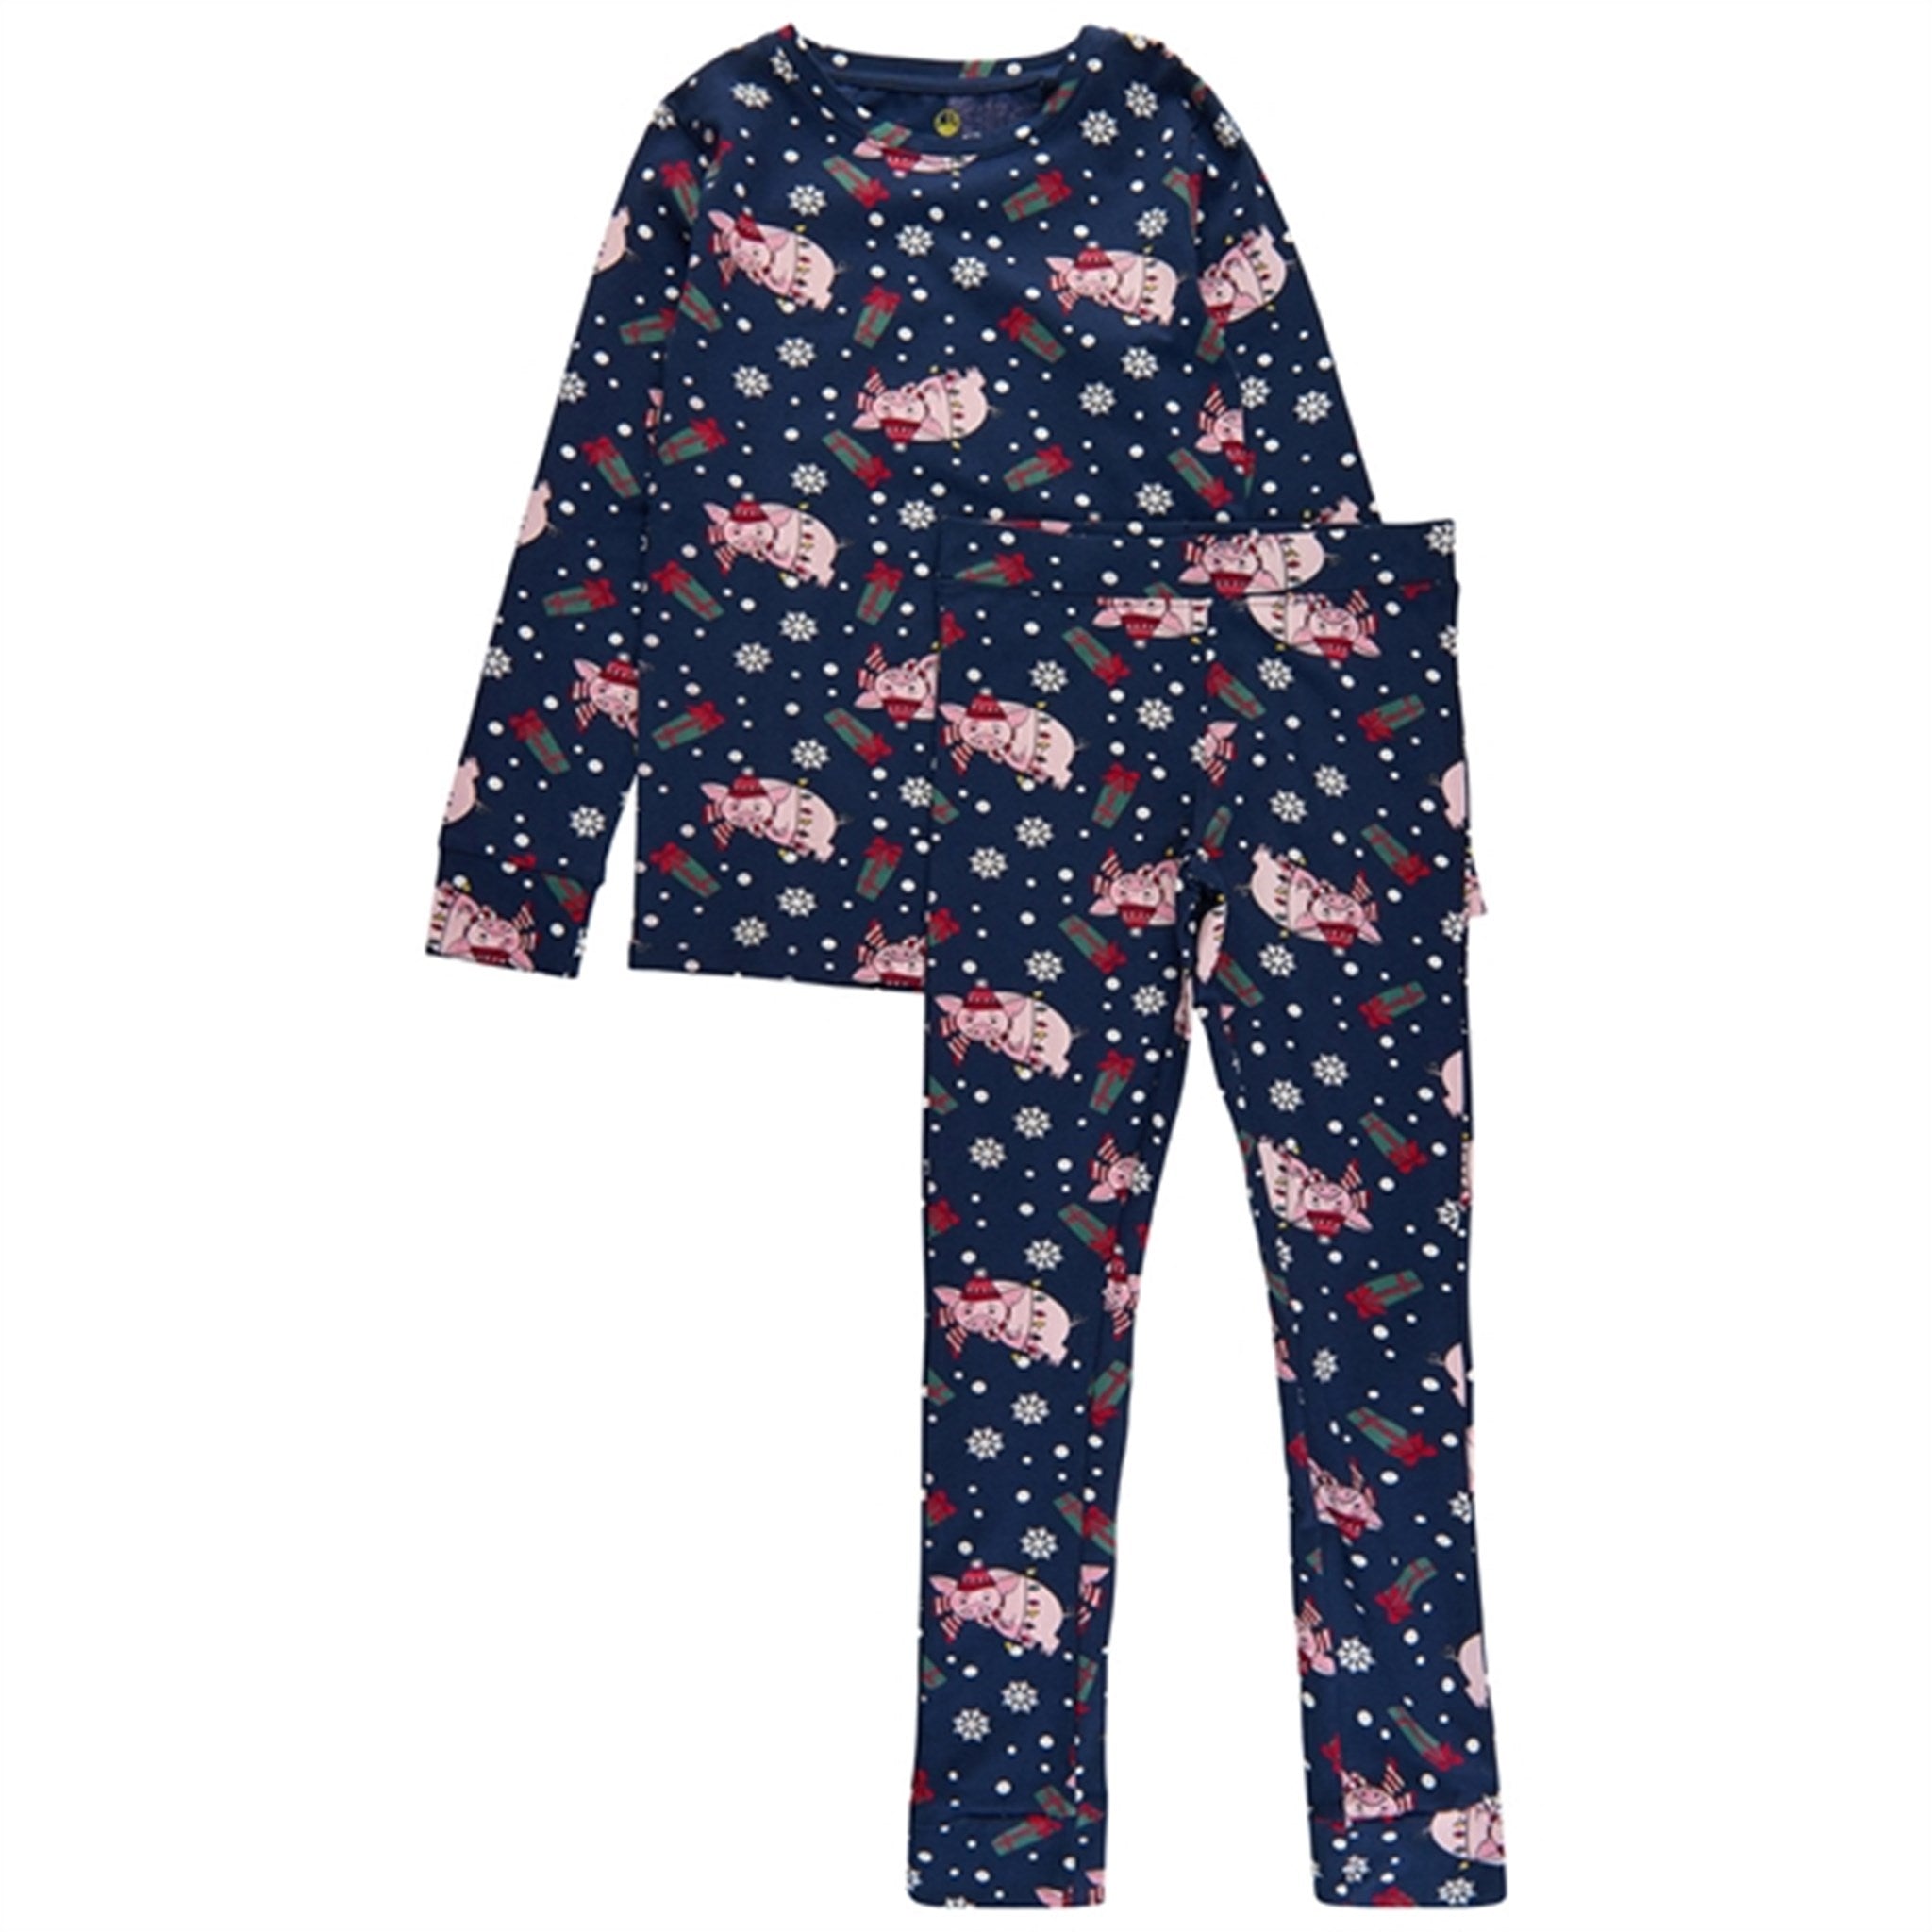 给你的孩子带来这款美妙的海军蓝色节日睡衣！这款睡衣是为节日季节增添额外舒适感和时尚感的必备品